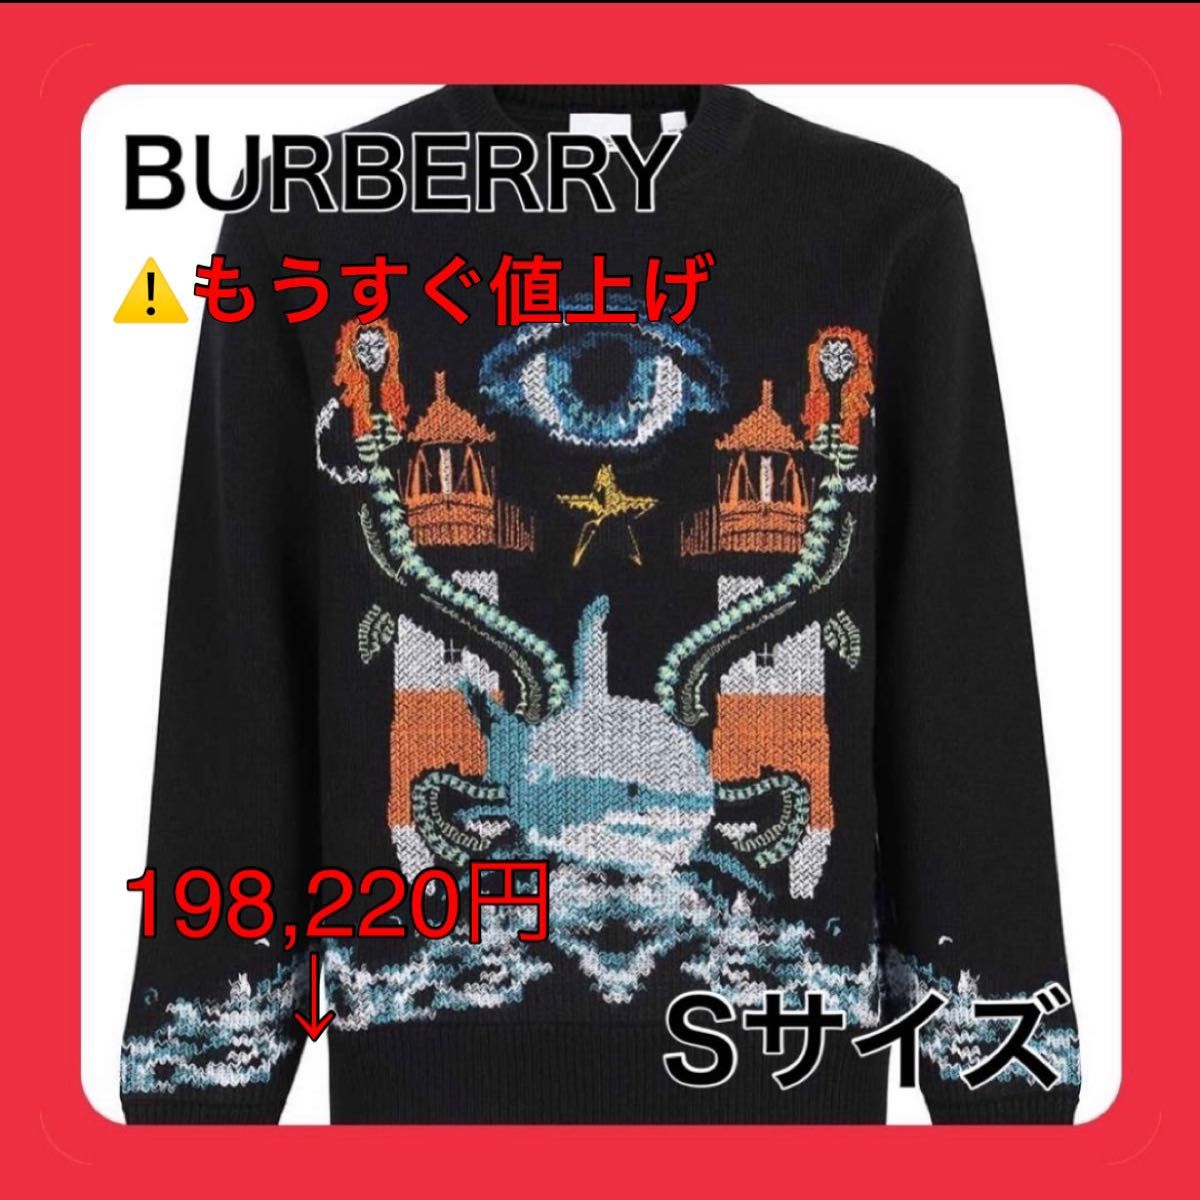 【正規品】Burberry ニット セーター おしゃれ ウール メンズ 高級 レア バーバリー 貴重 人気 冬 春 秋 きれいめ